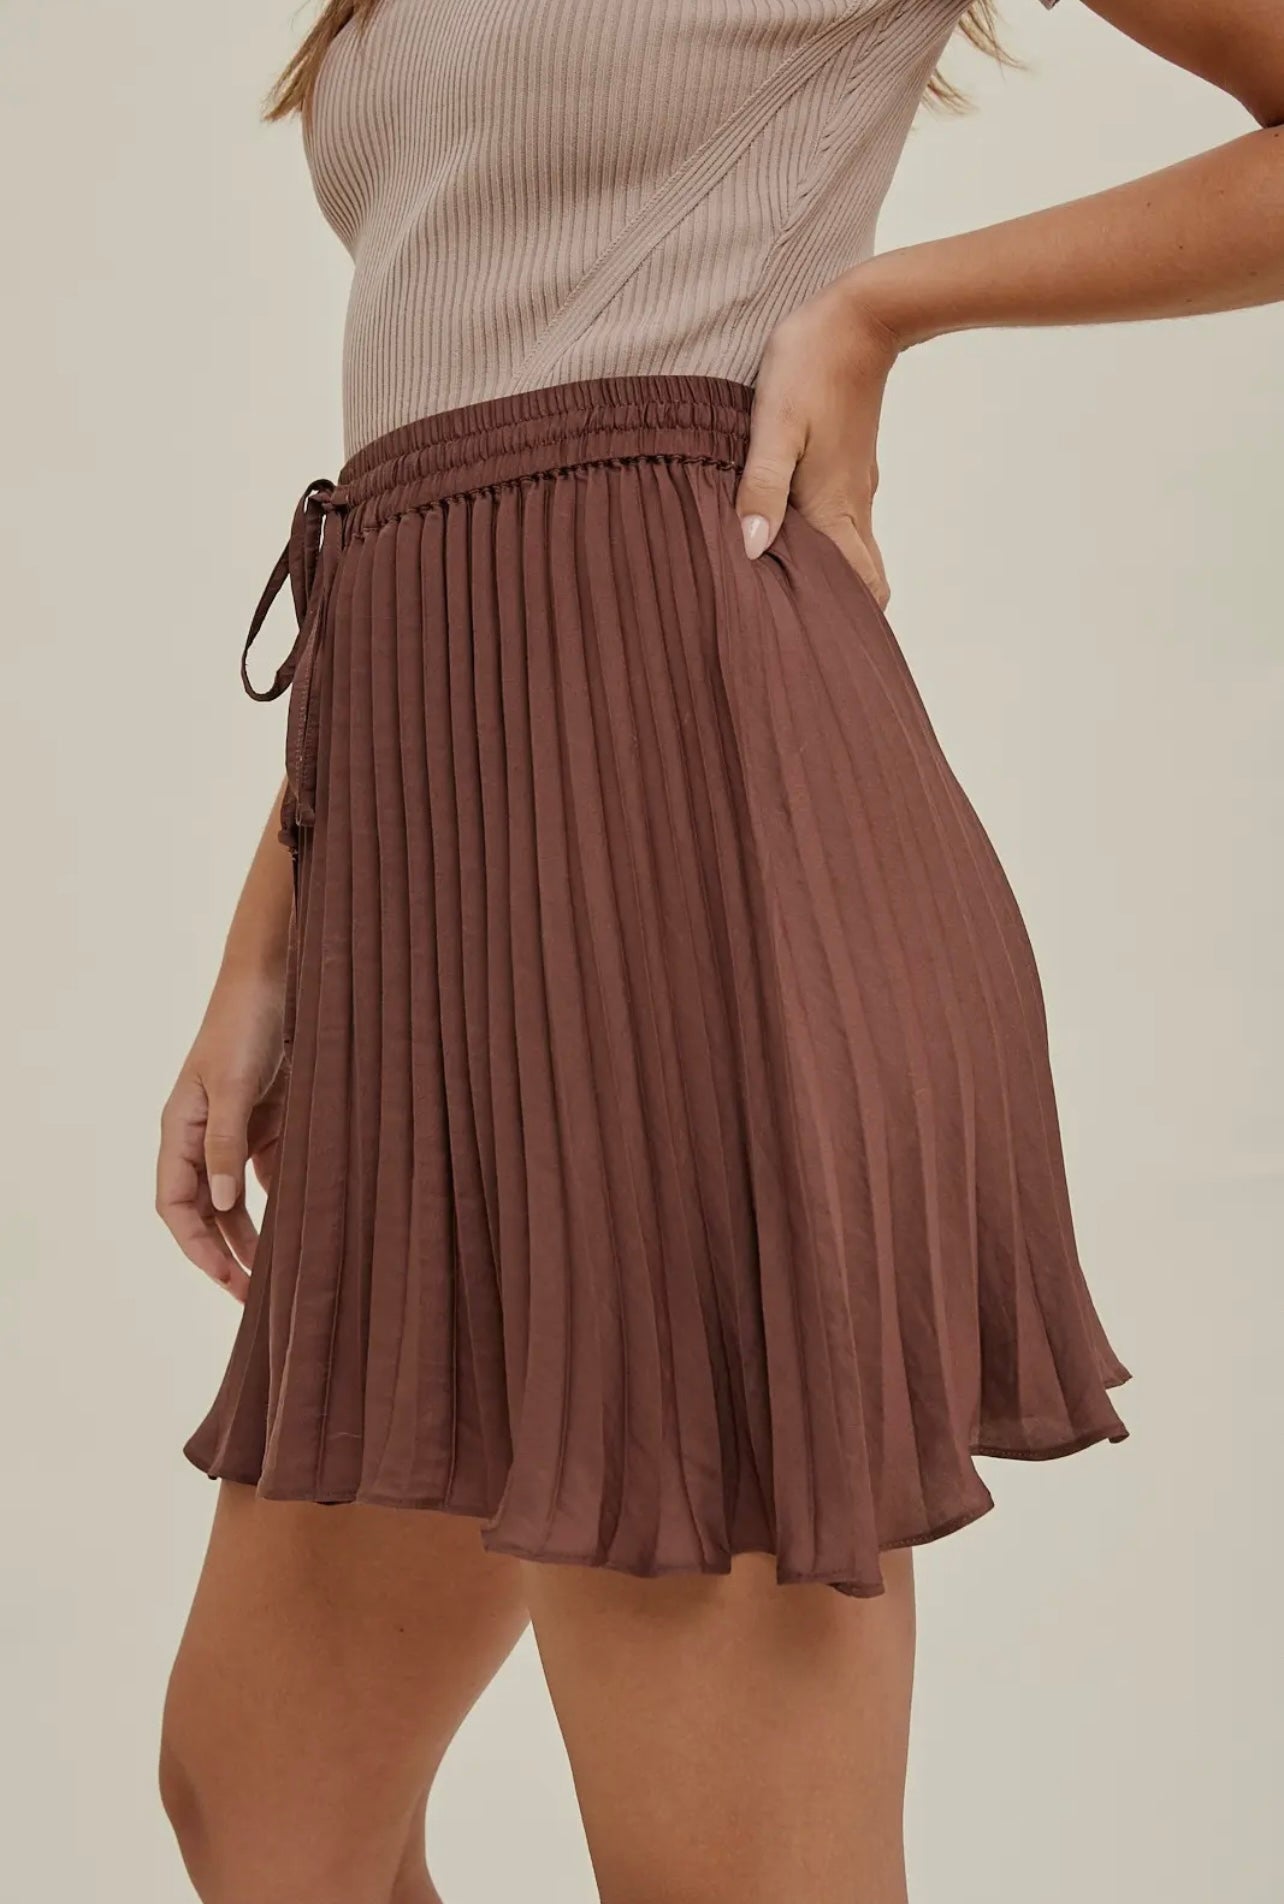 Sweet Like Cinnamon Skirt